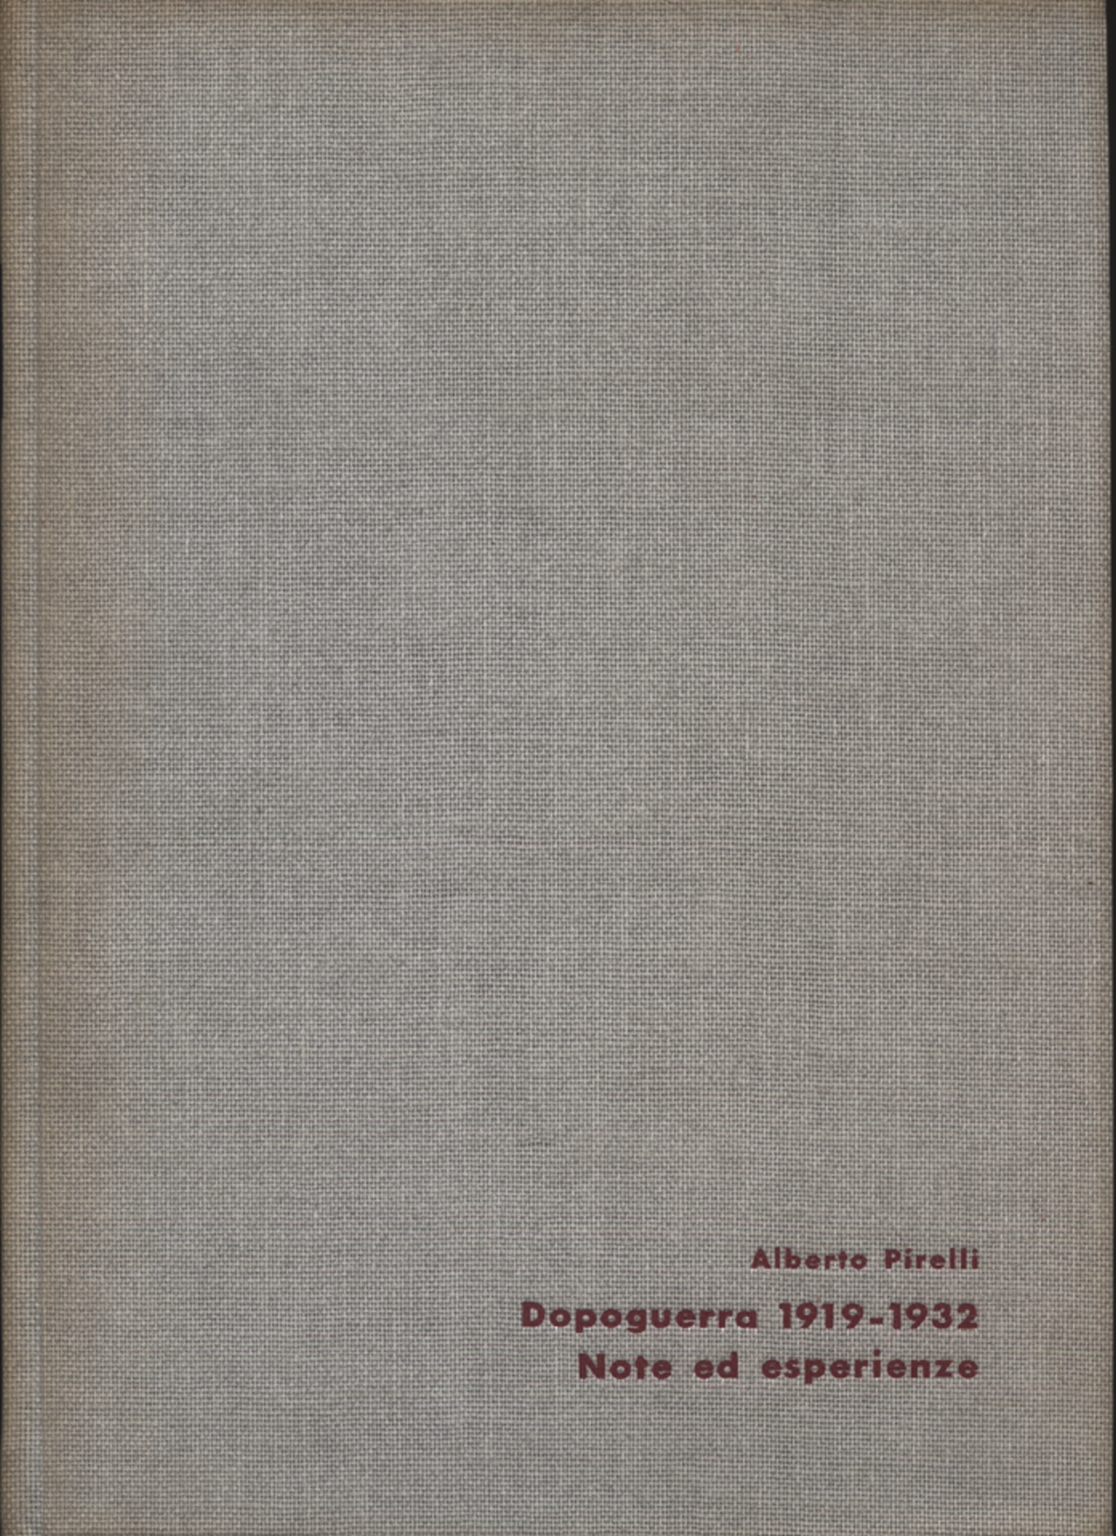 Dopoguerra 1919-1932, Alberto Pirelli